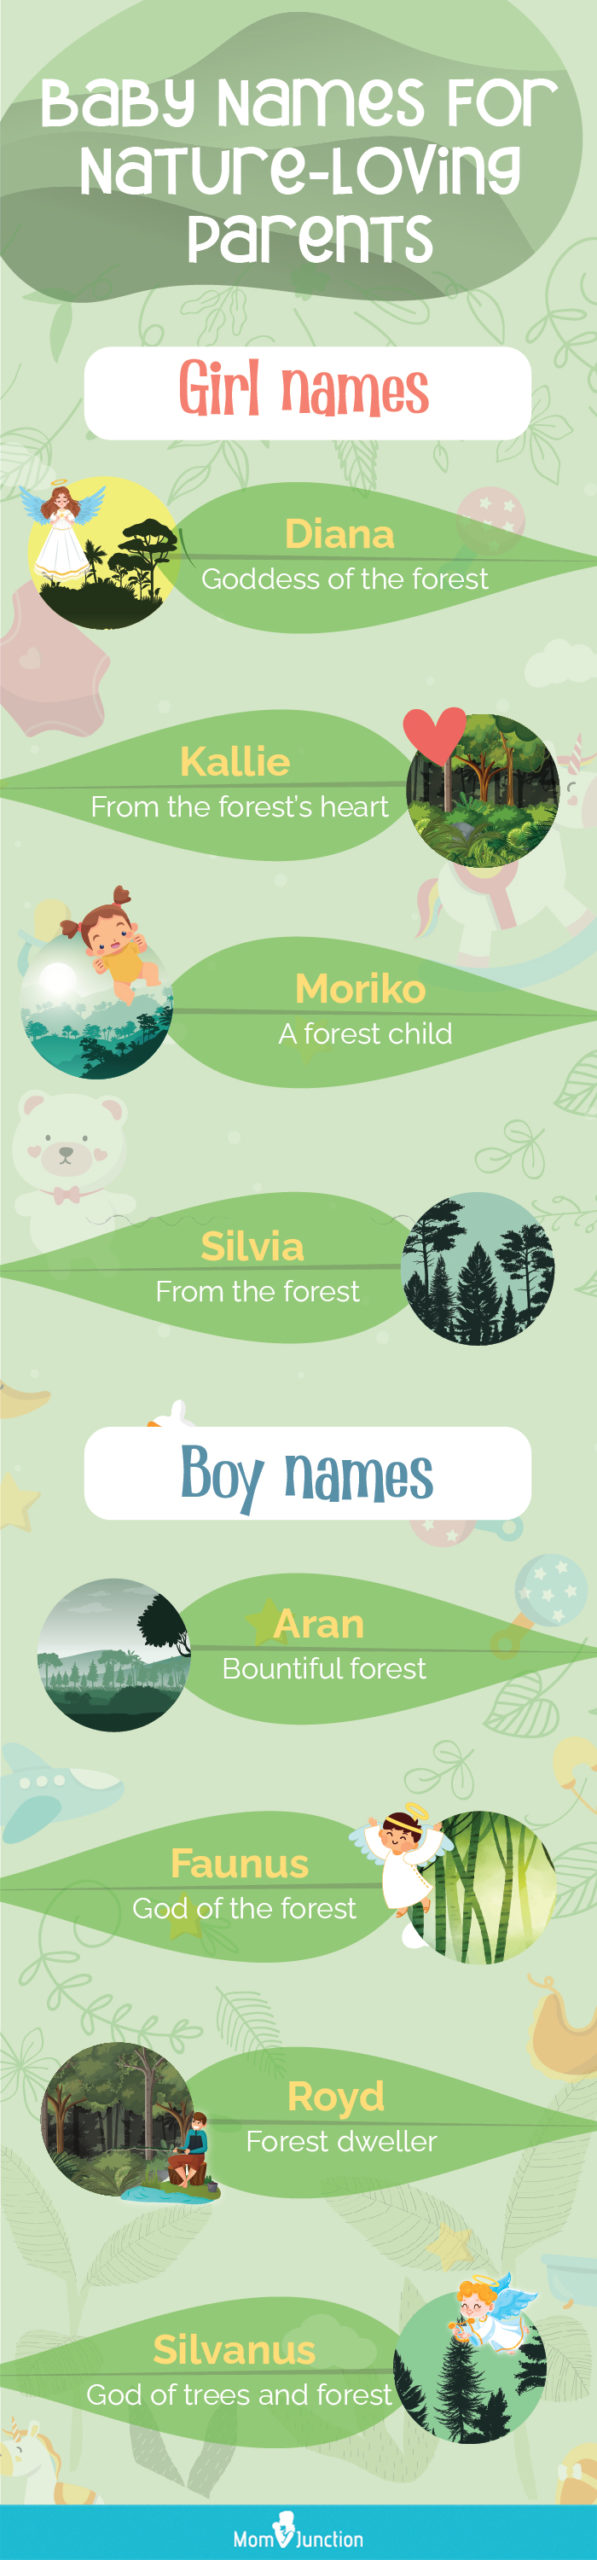 热爱大自然的父母给孩子起的名字(信息图)